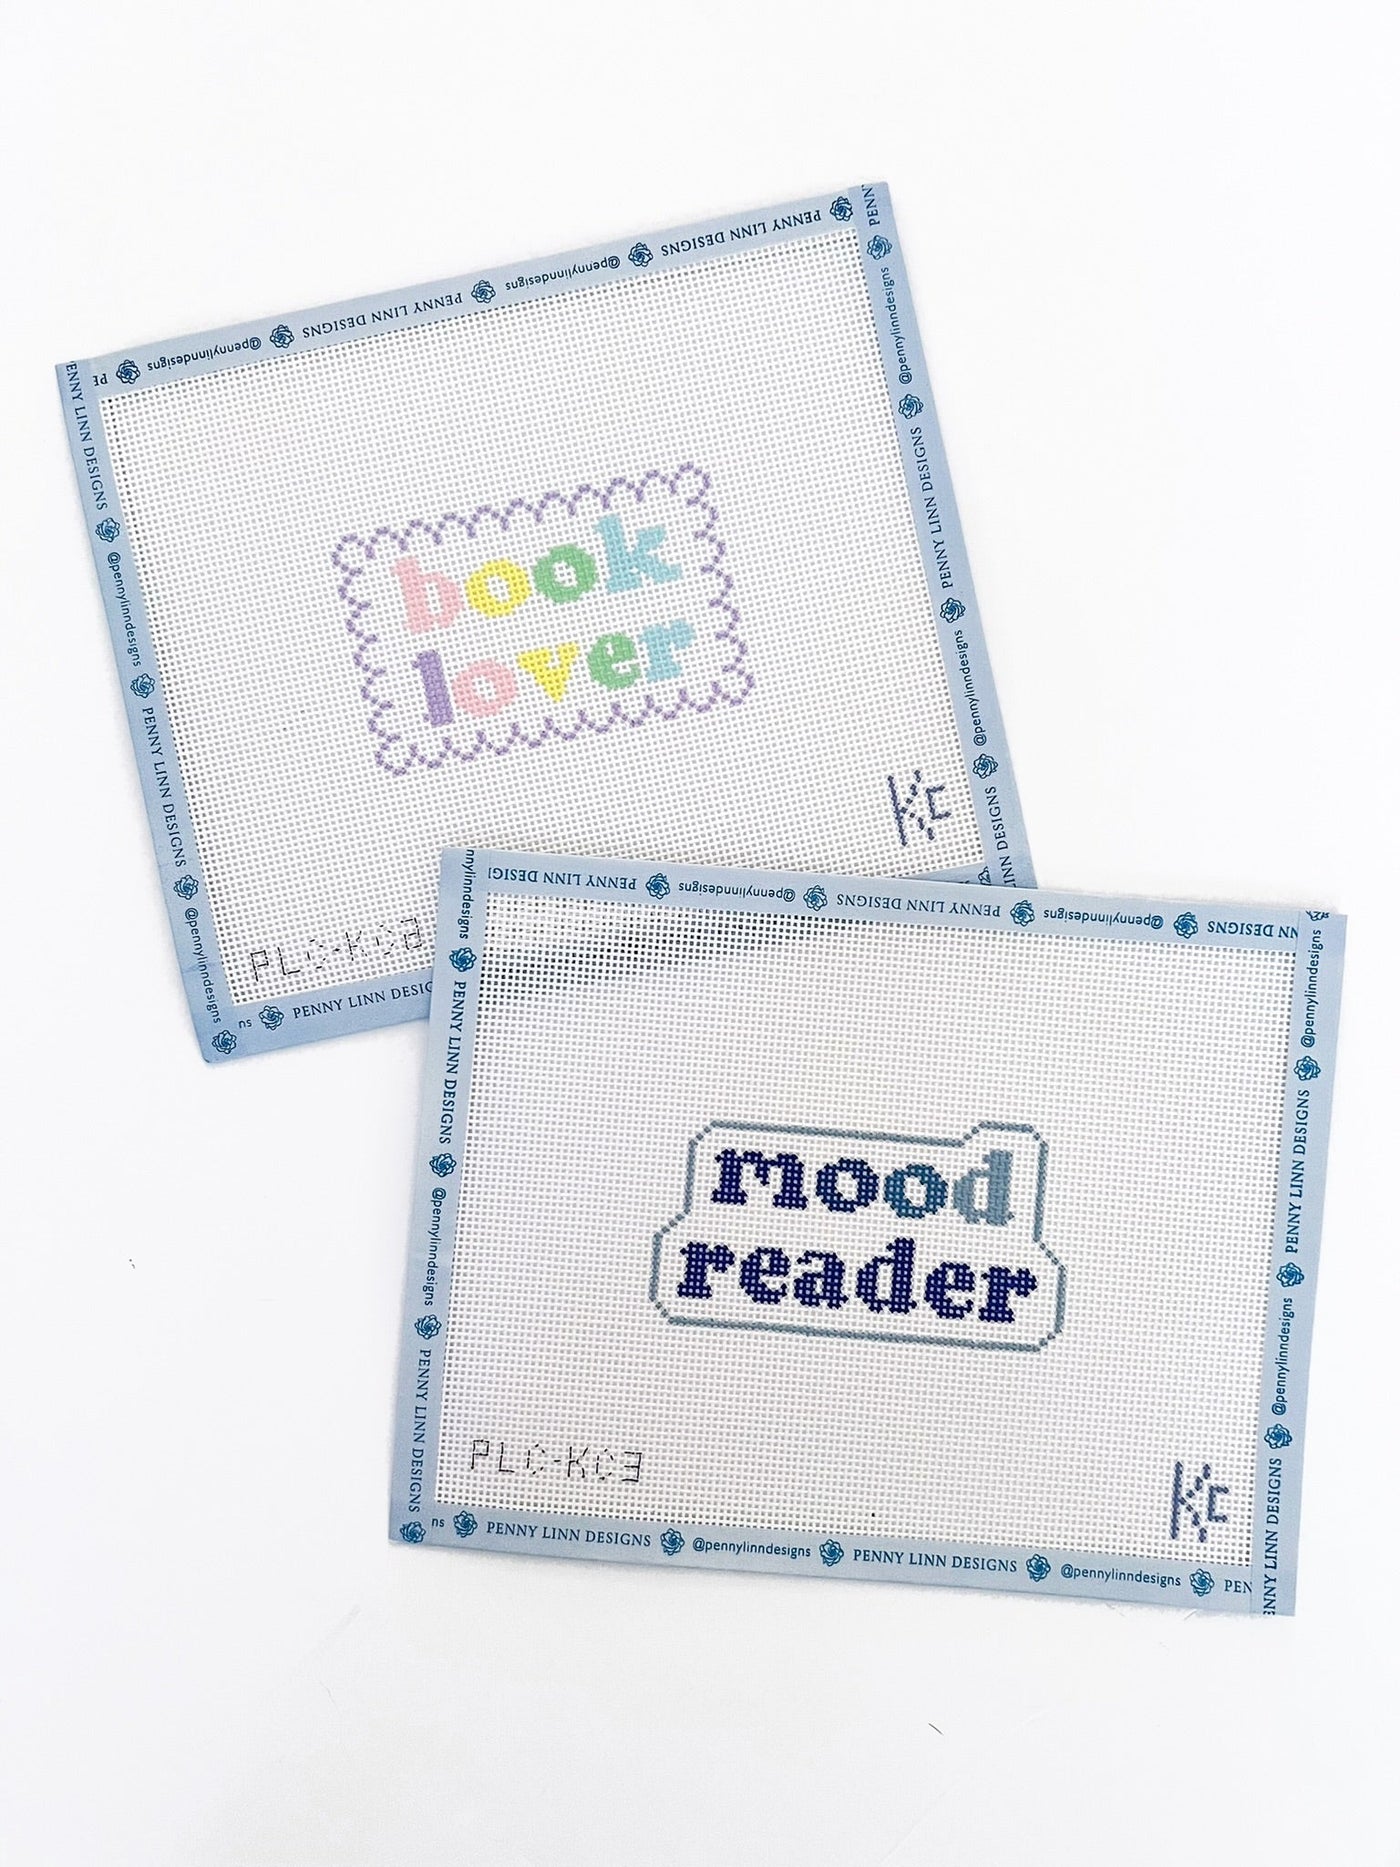 Mood Reader - Penny Linn Designs - Kyra Cotter Designs